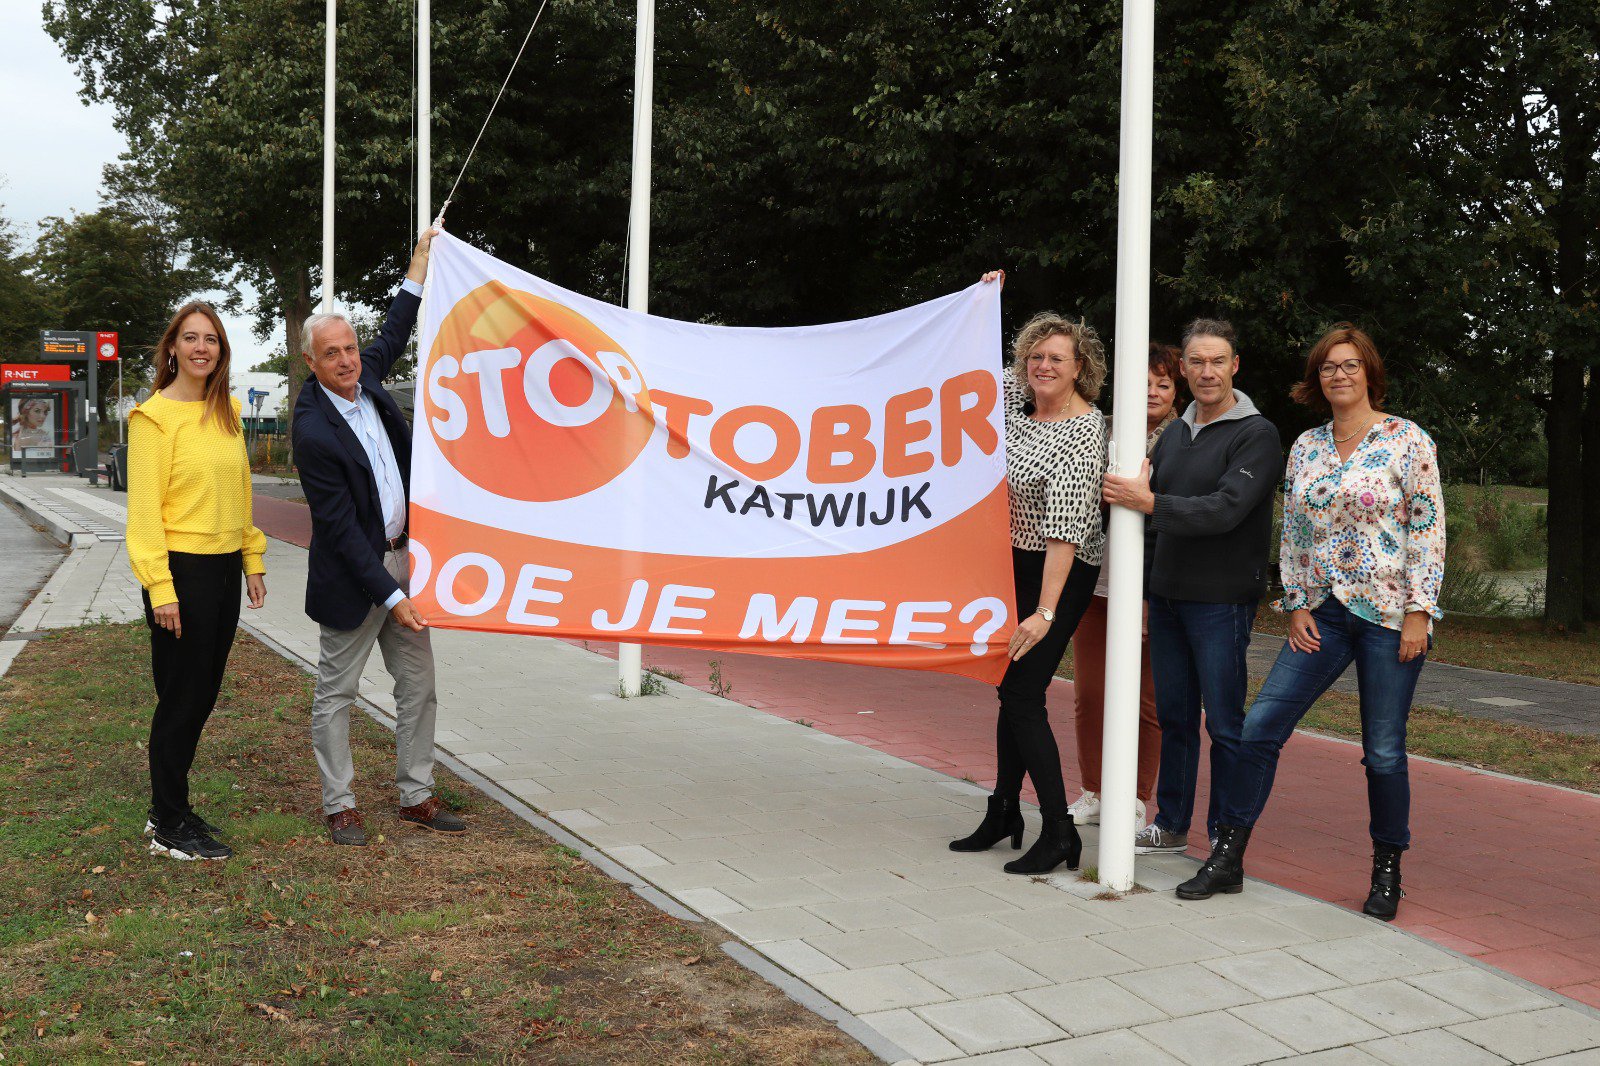 mannen en vrouwen hebben een vlag vast met boodschap over stoptober